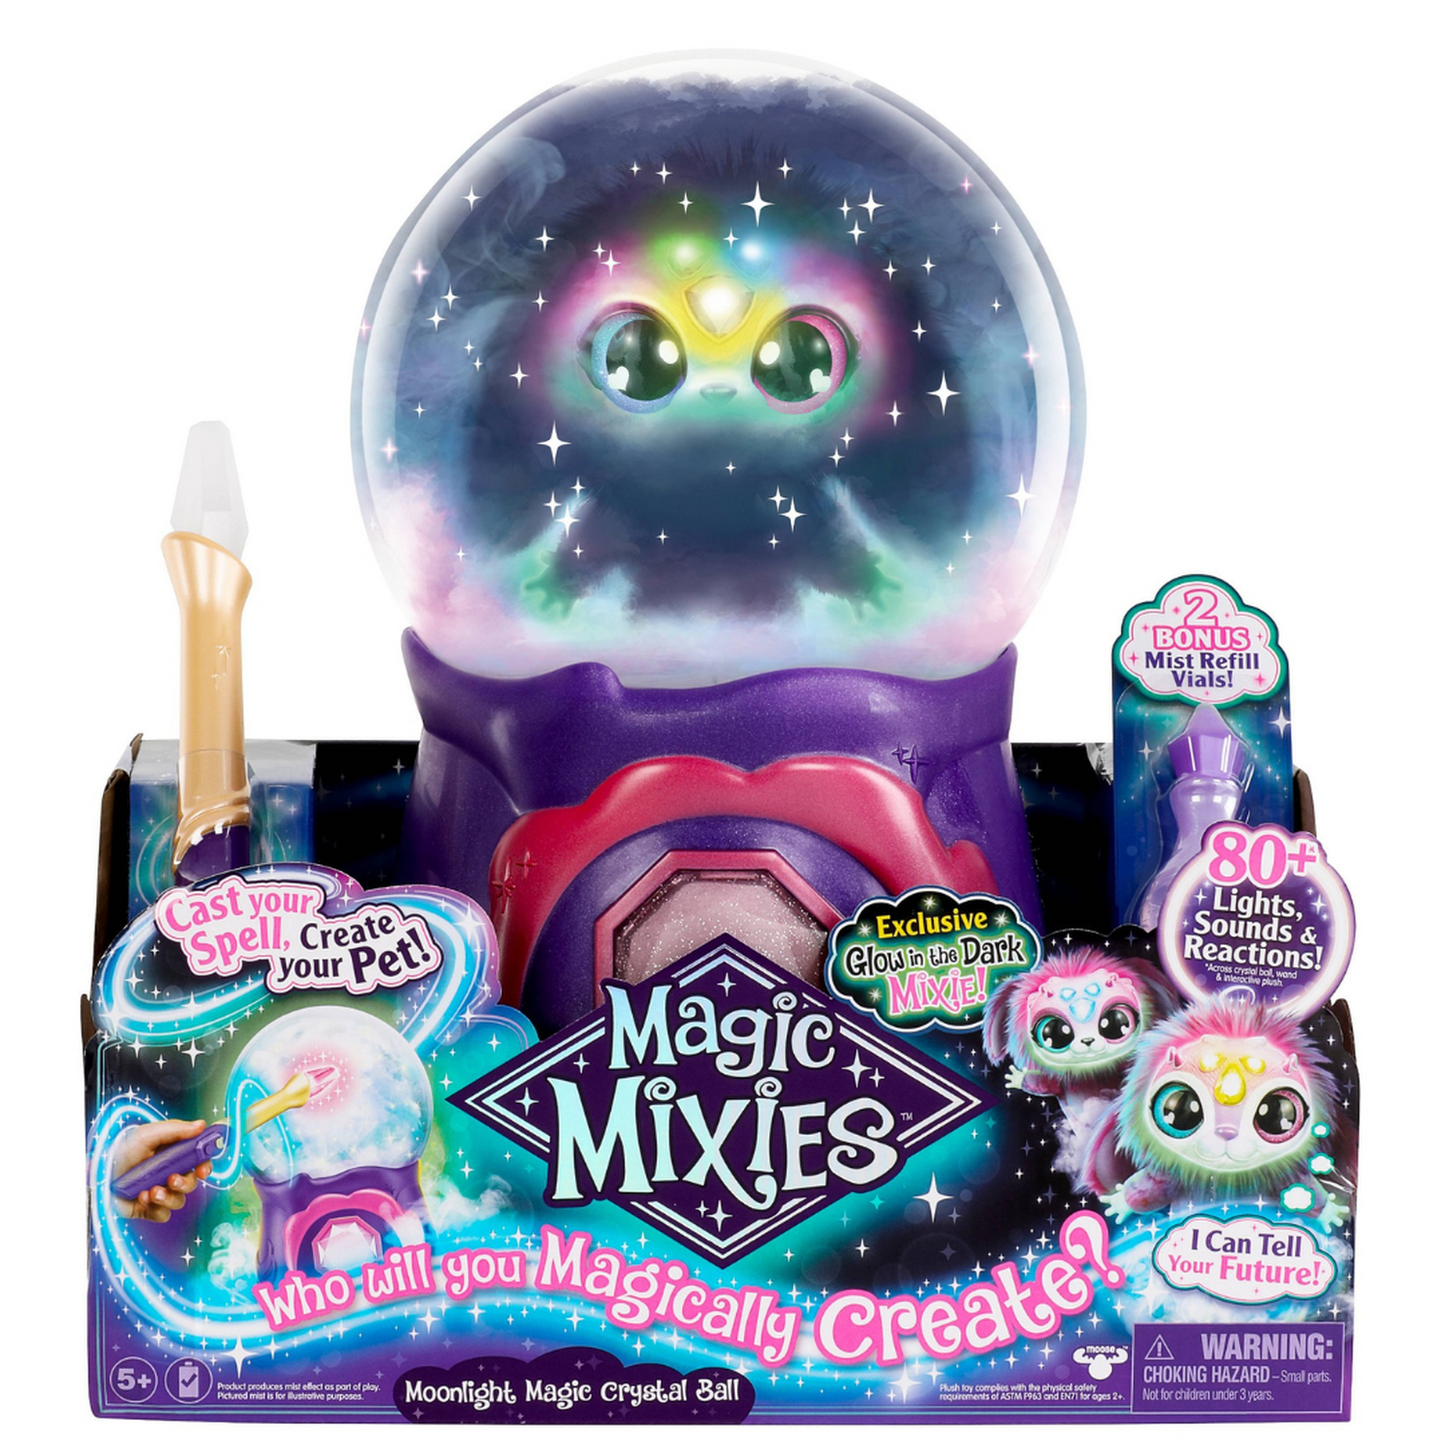 Magic Mixies Moonlight Magical Crystal Ball